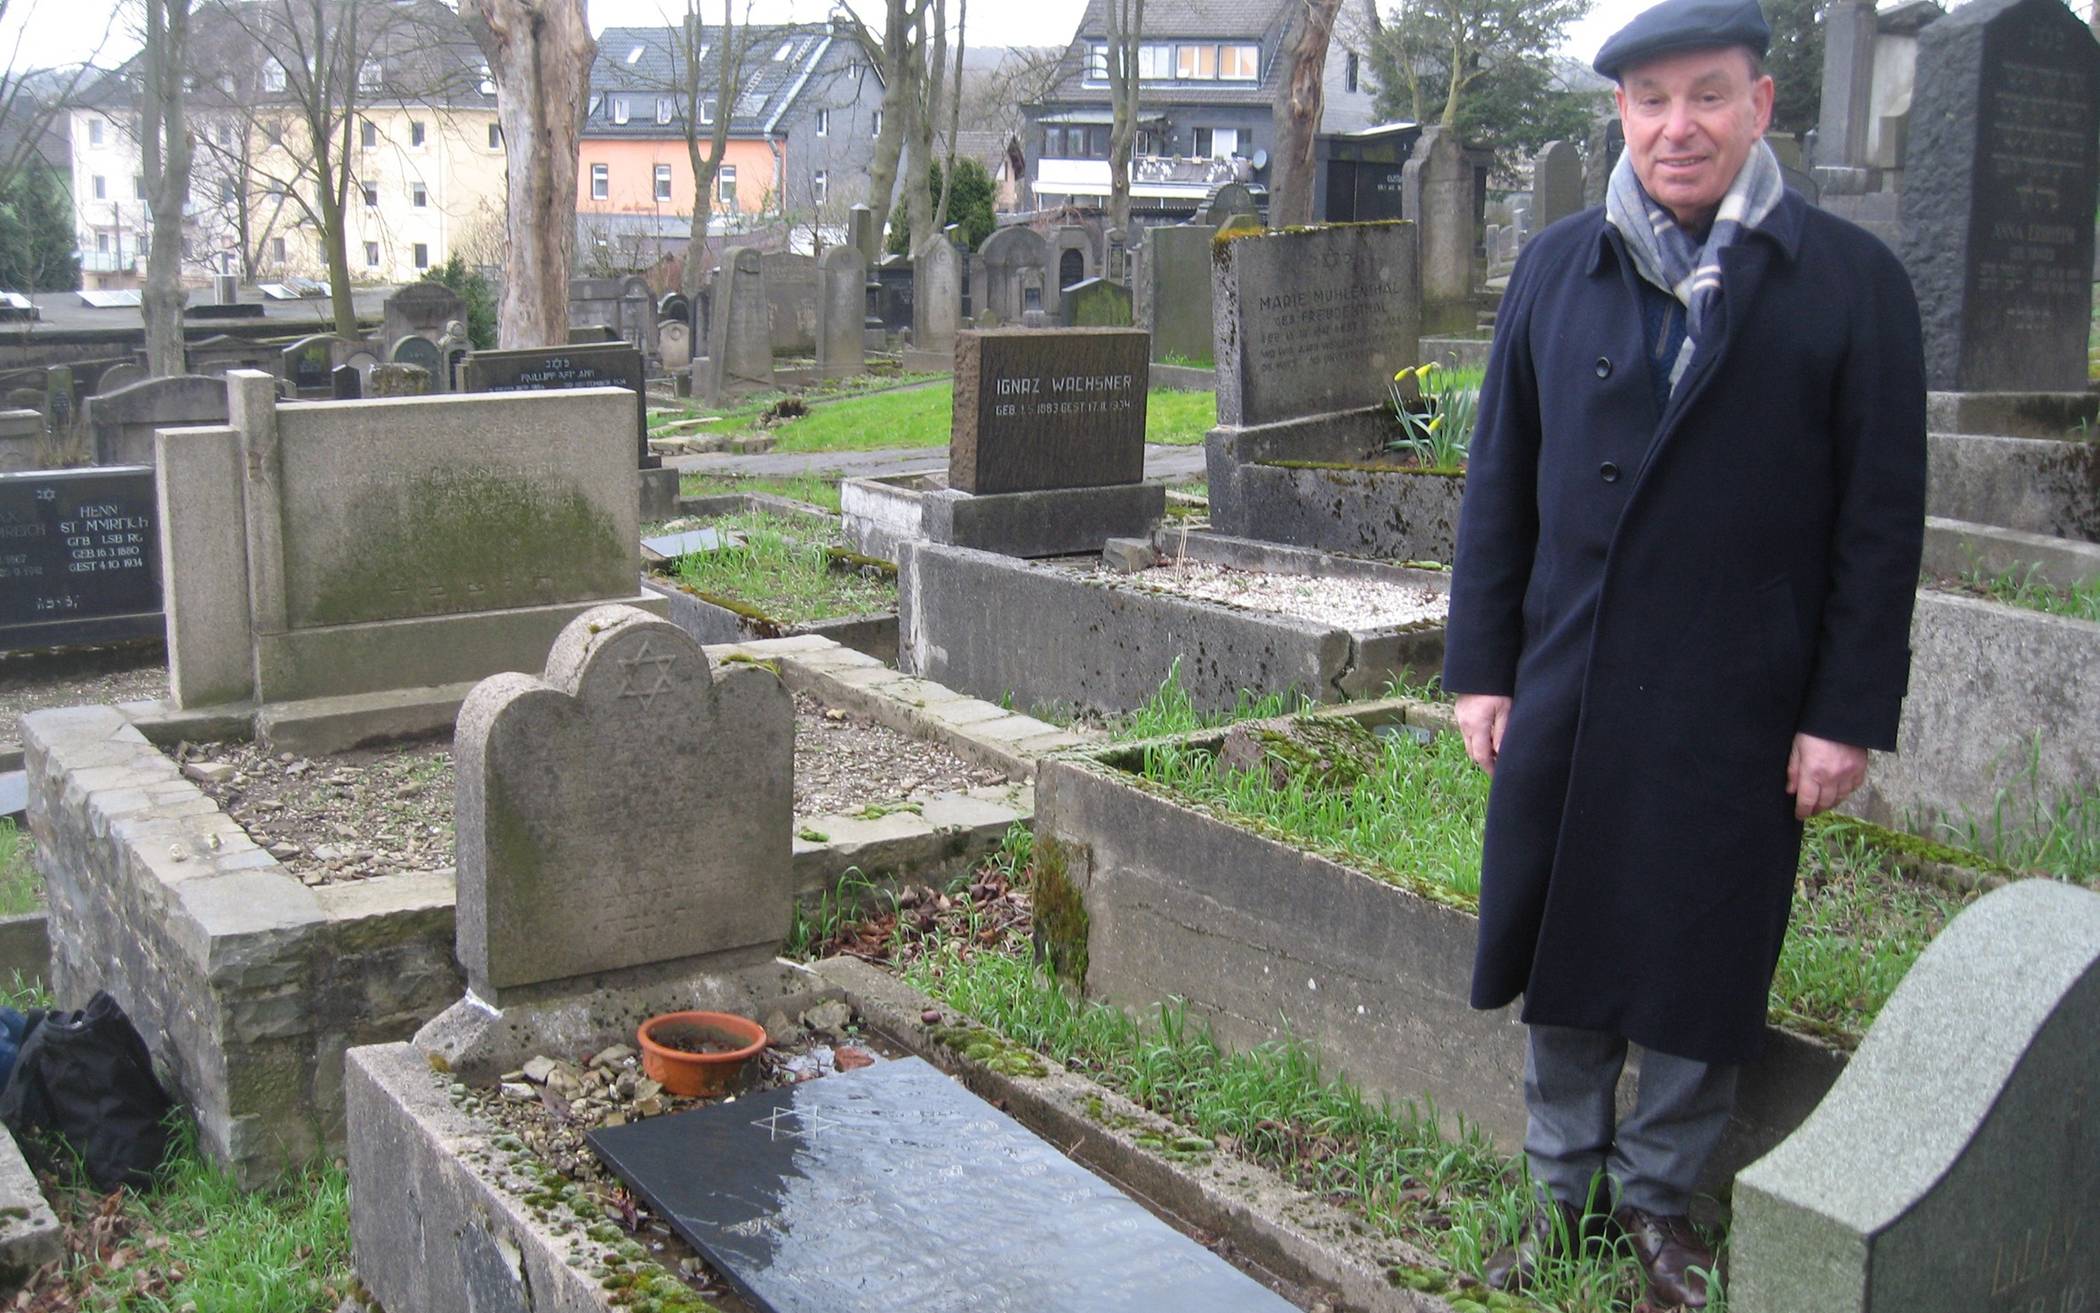  Dr. Stephen Lawson aus England, Neffe von Oswald Laufer, einem der ersten Wuppertaler Nazi-Opfer, besuchte das Grab seines Onkels. 